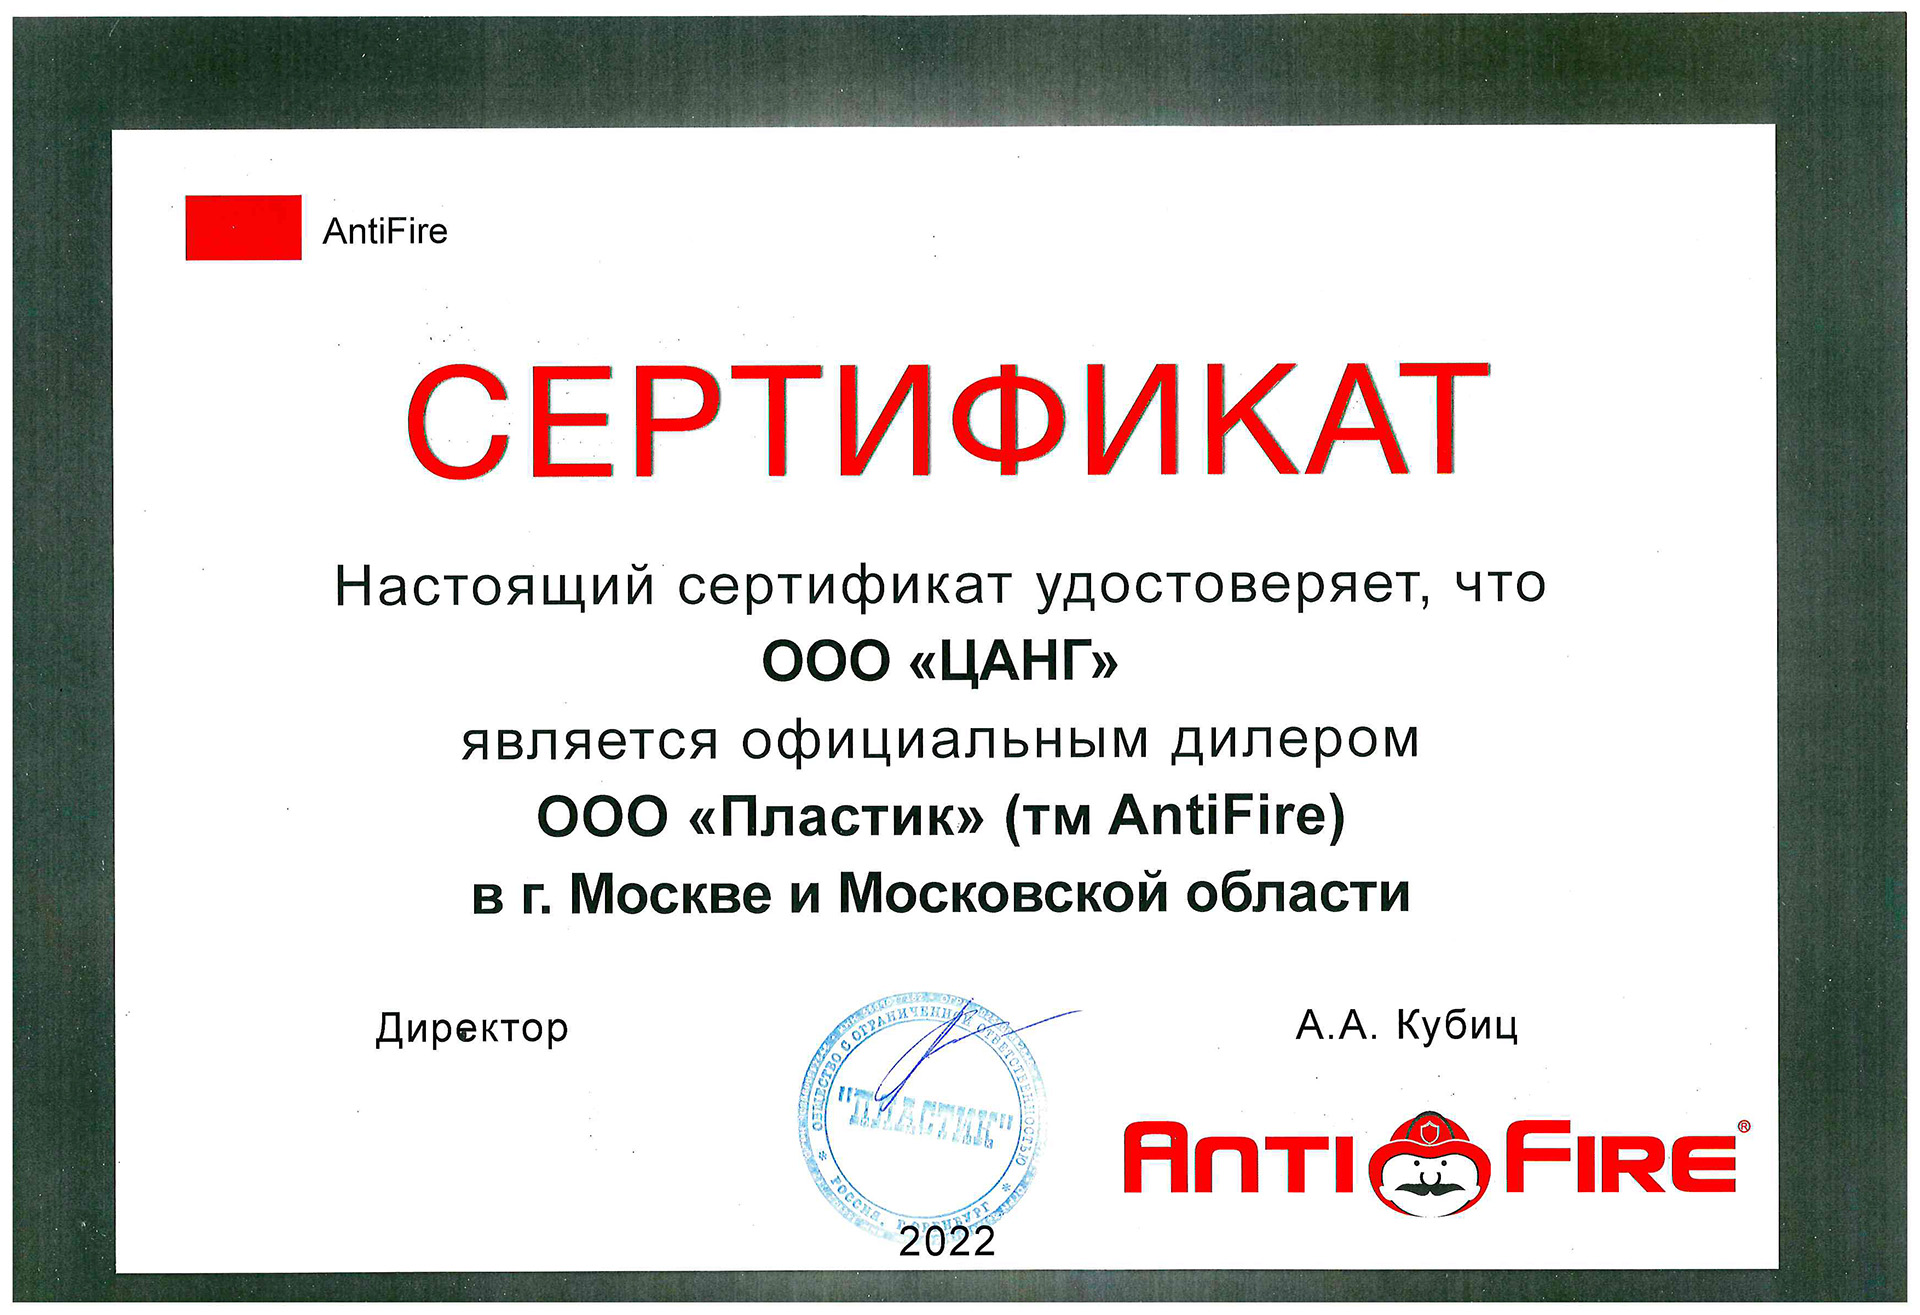 Anti Fire 2022